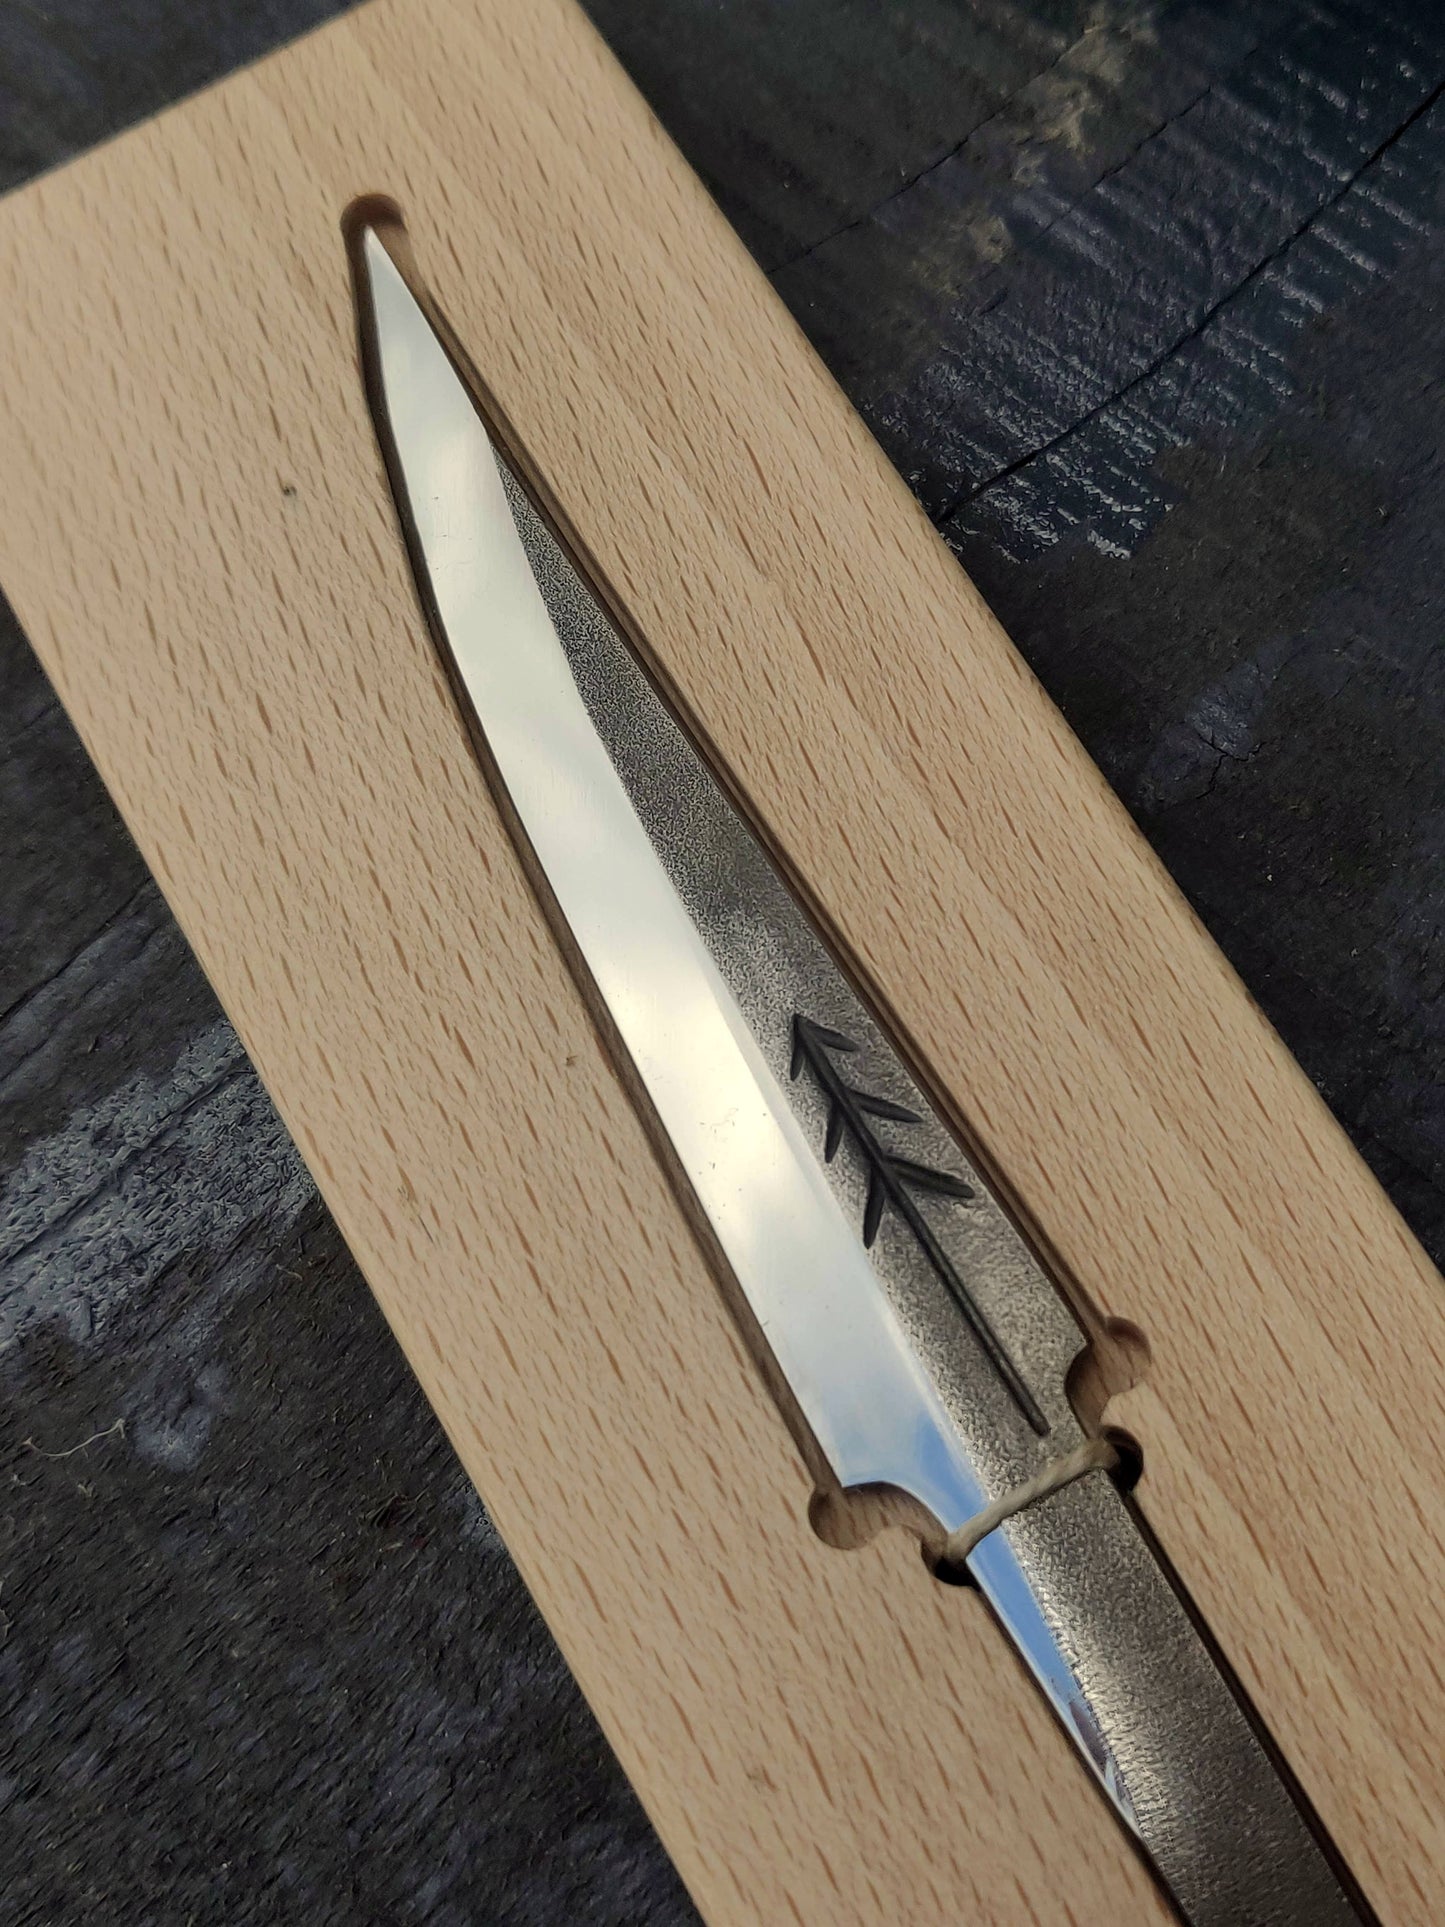 Slojd blade 85mm, high carbon 52100/100Cr6 steel. Whittling knife